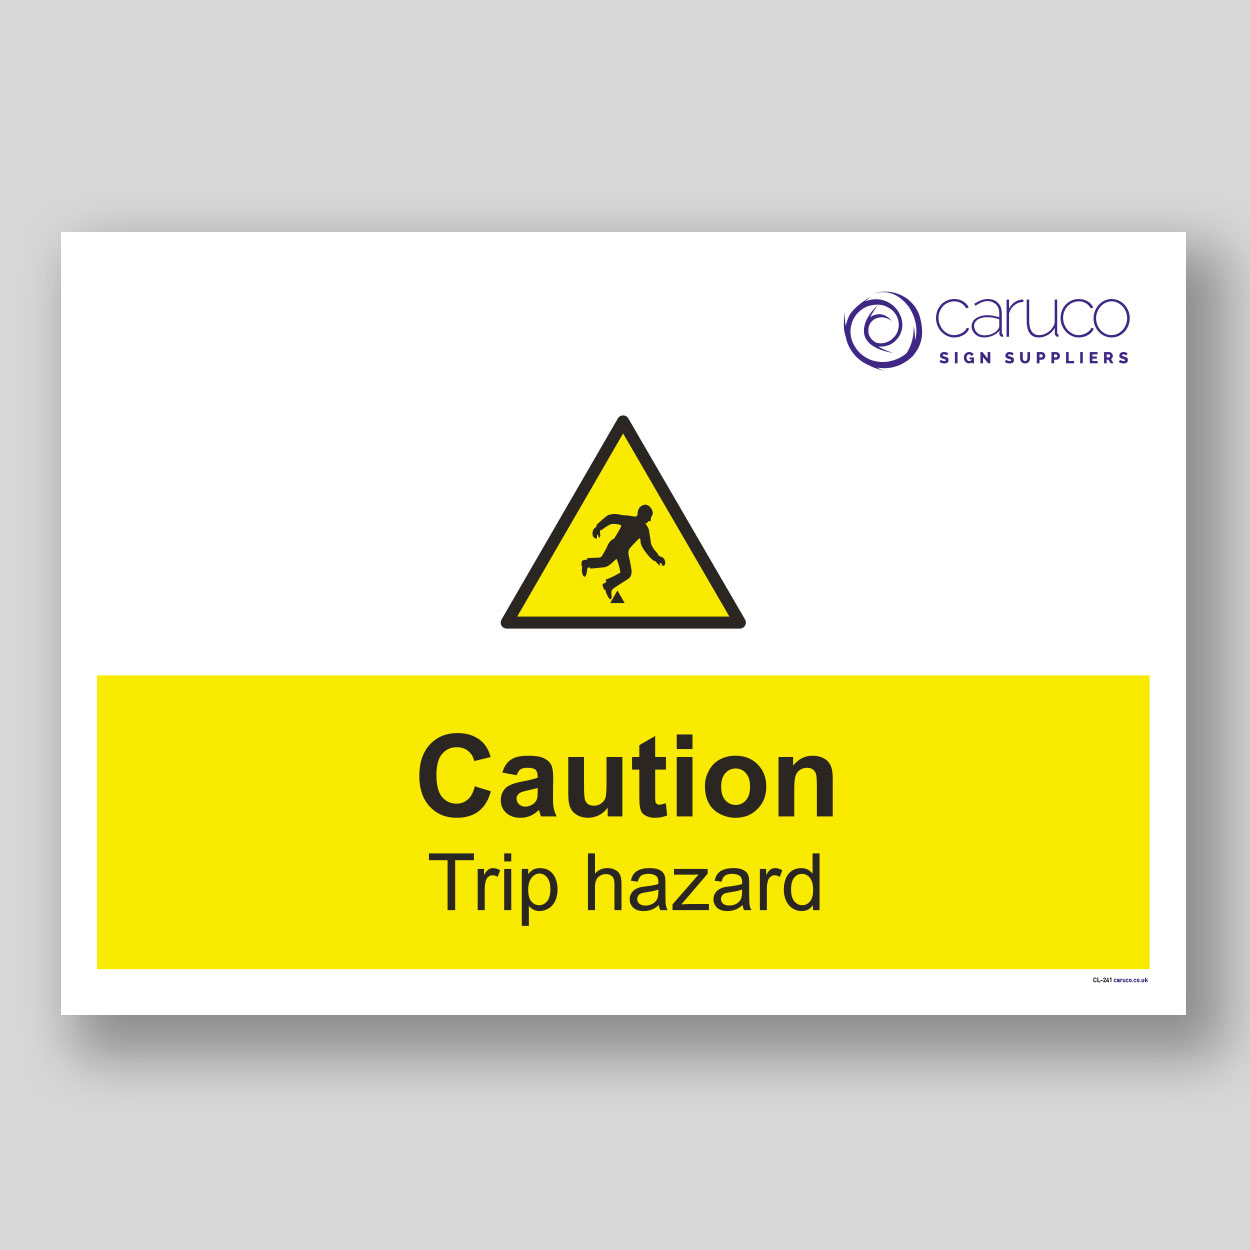 CL-241 Caution - trip hazard